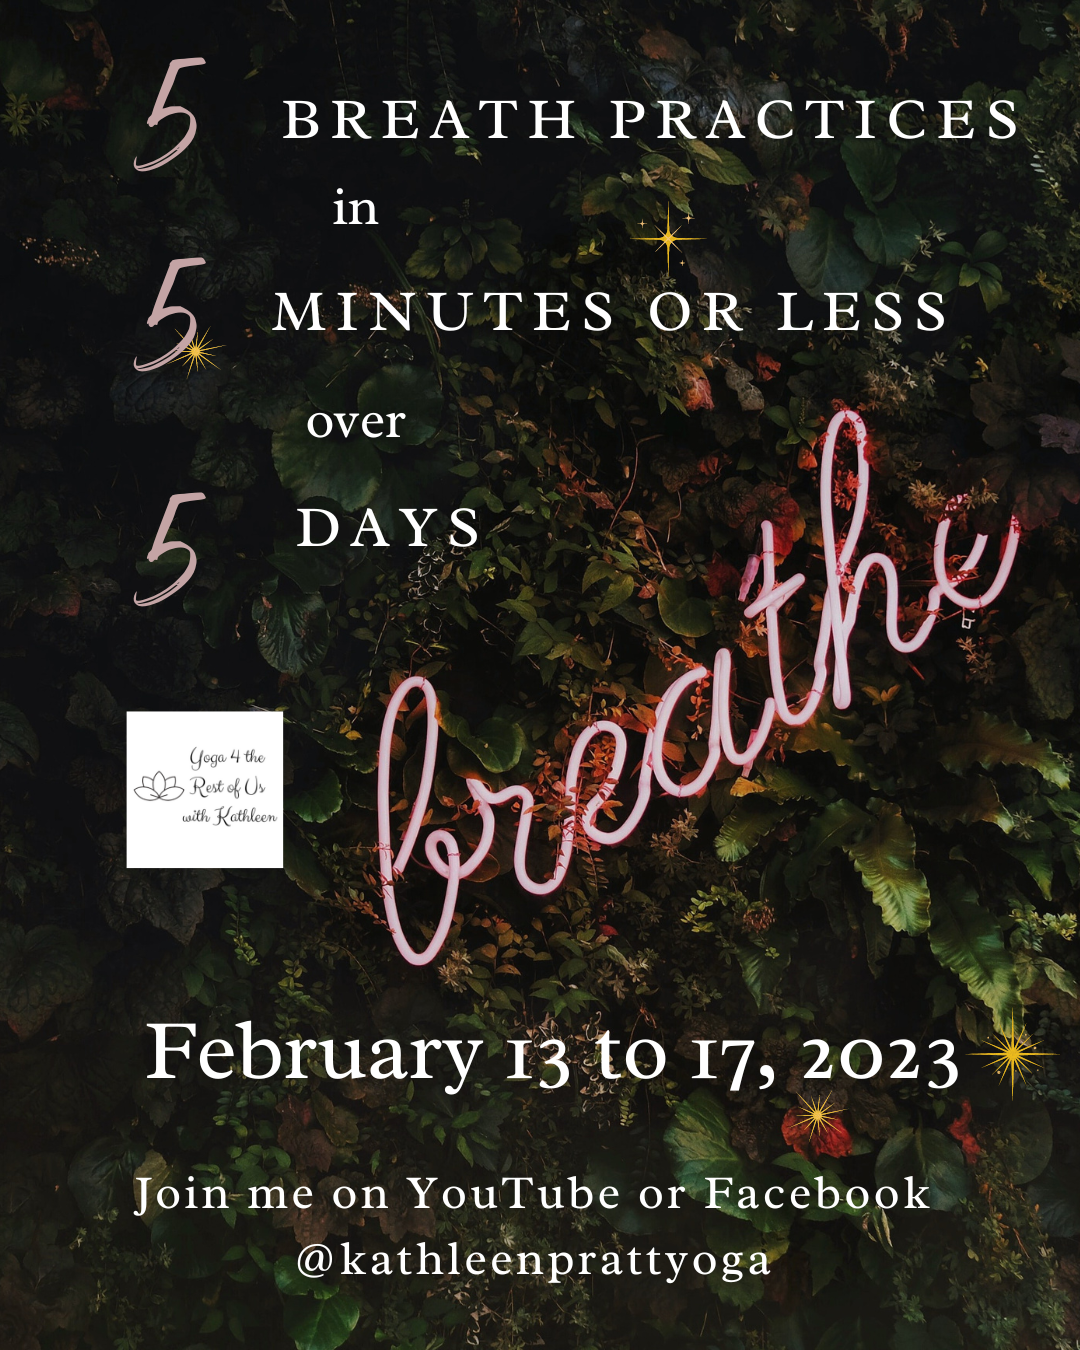 5 5 5 Breath Practices